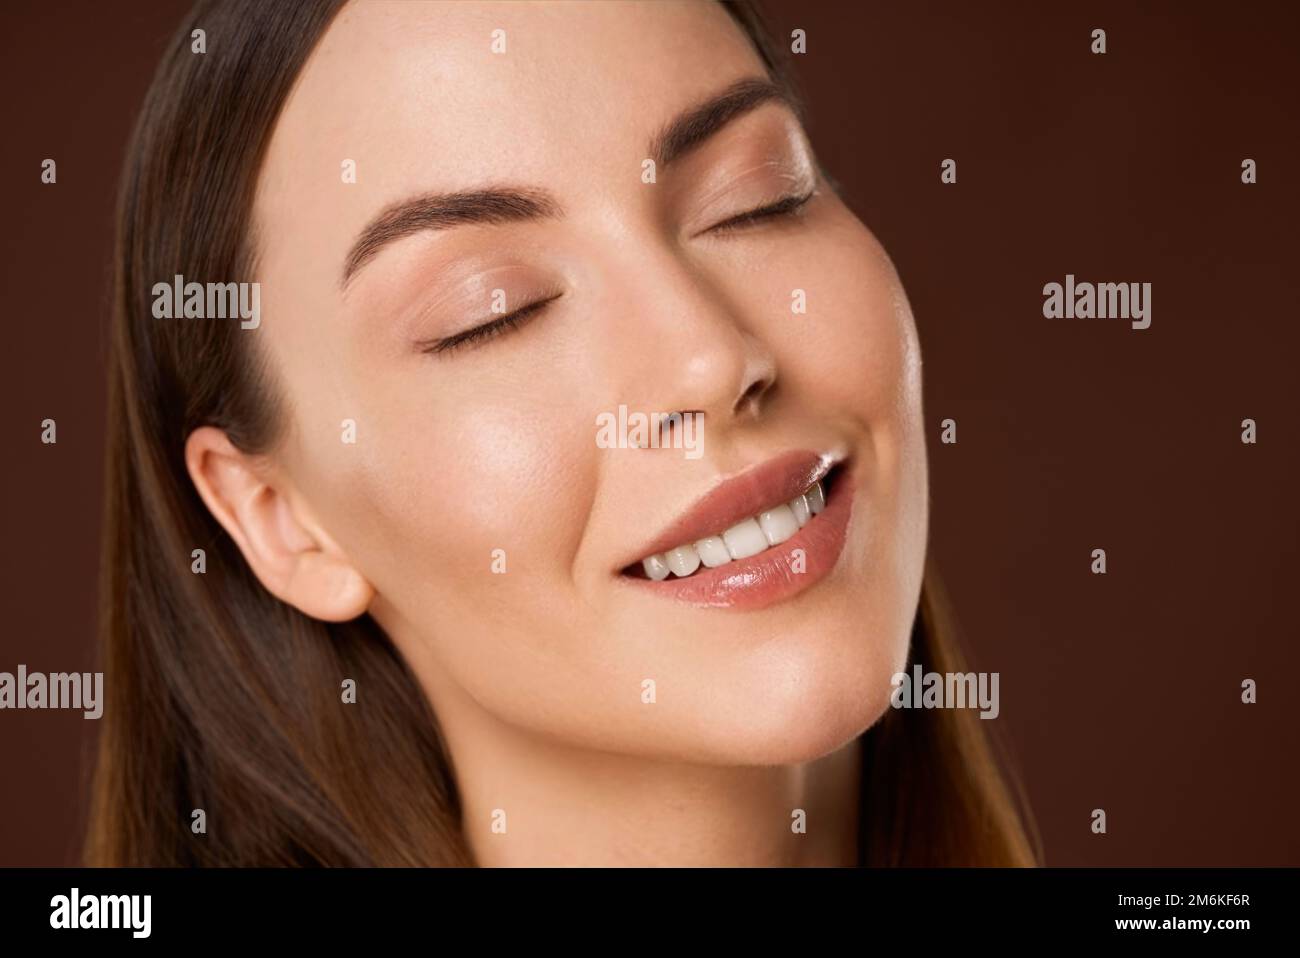 Femme souriante avec maquillage naturel et yeux fermés Banque D'Images